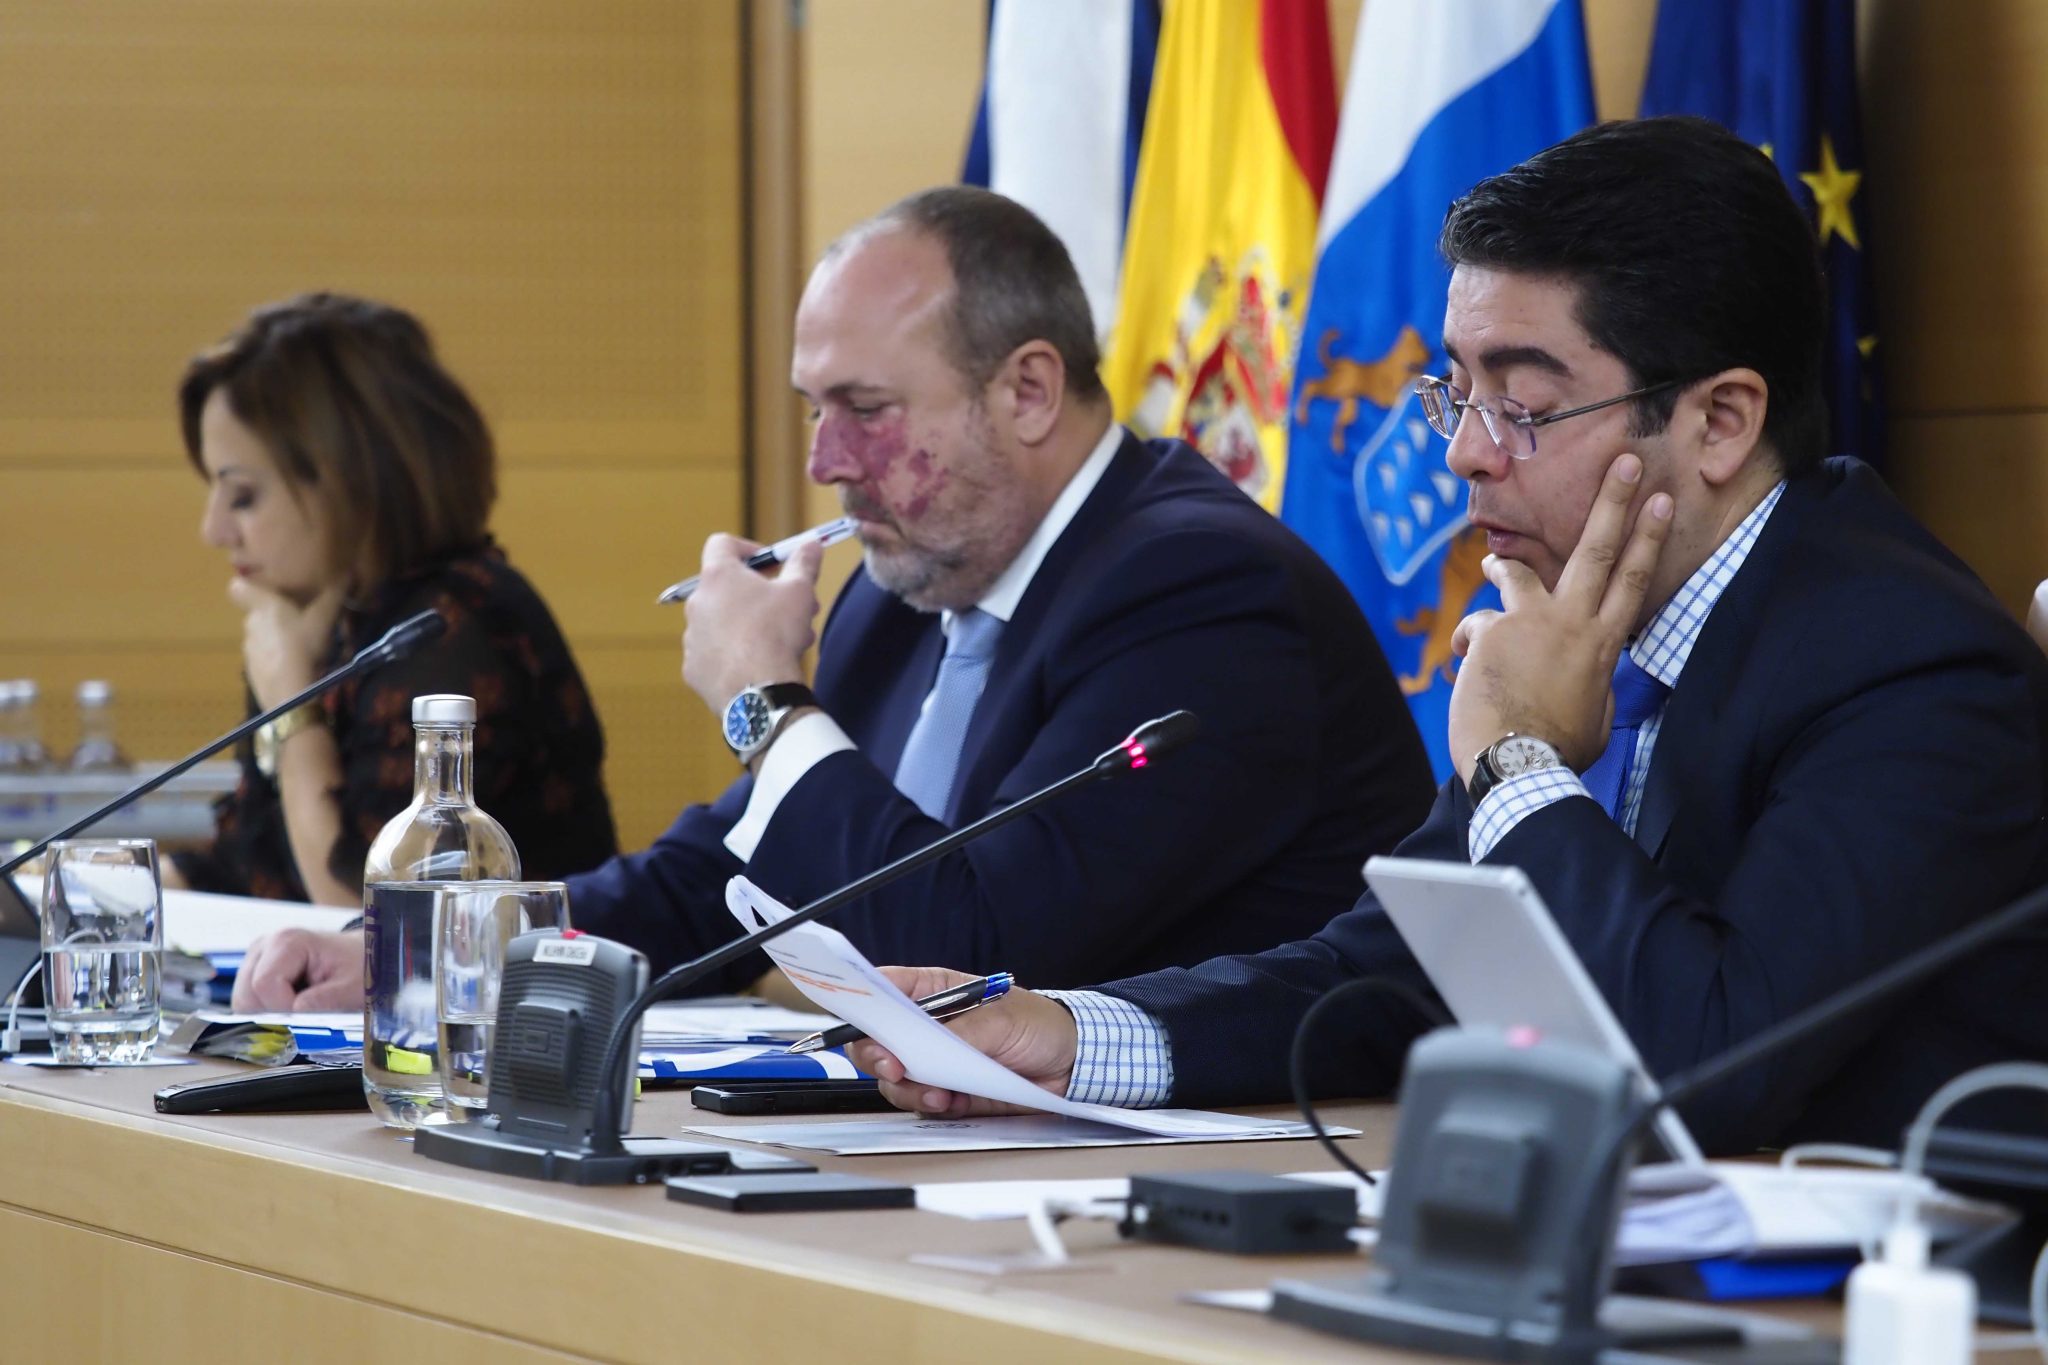 El pleno del Cabildo aprobó ayer su presupuesto para 2020, que contará con 861’3 millones, un 2’62% menos que en el ejercicio anterior. SERGIO MÉNDEZ